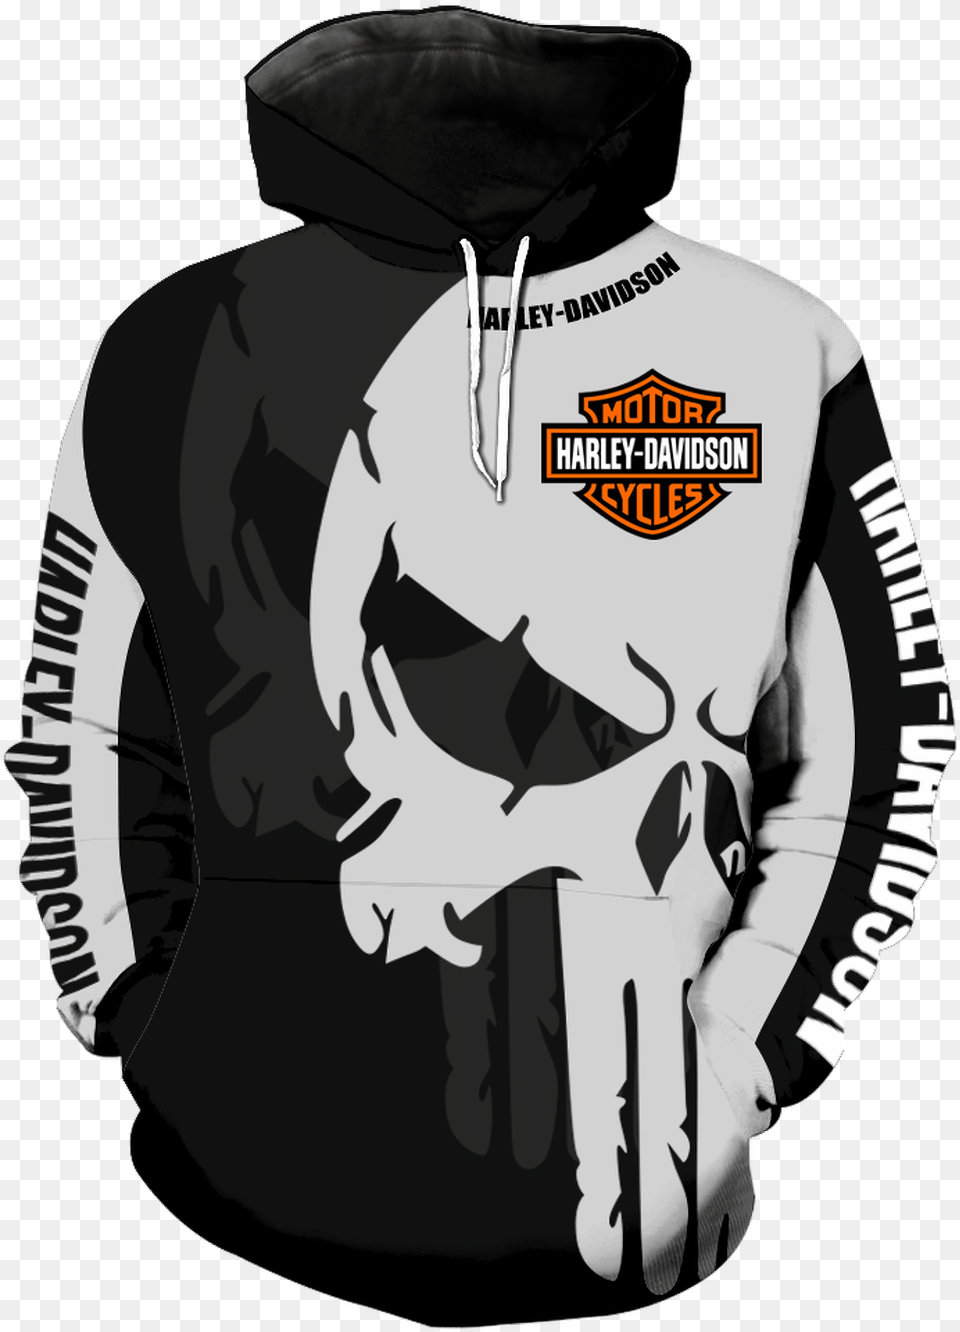 Harley Davidson Punisher Jacket, Sweatshirt, Clothing, Sweater, Hoodie Free Png Download